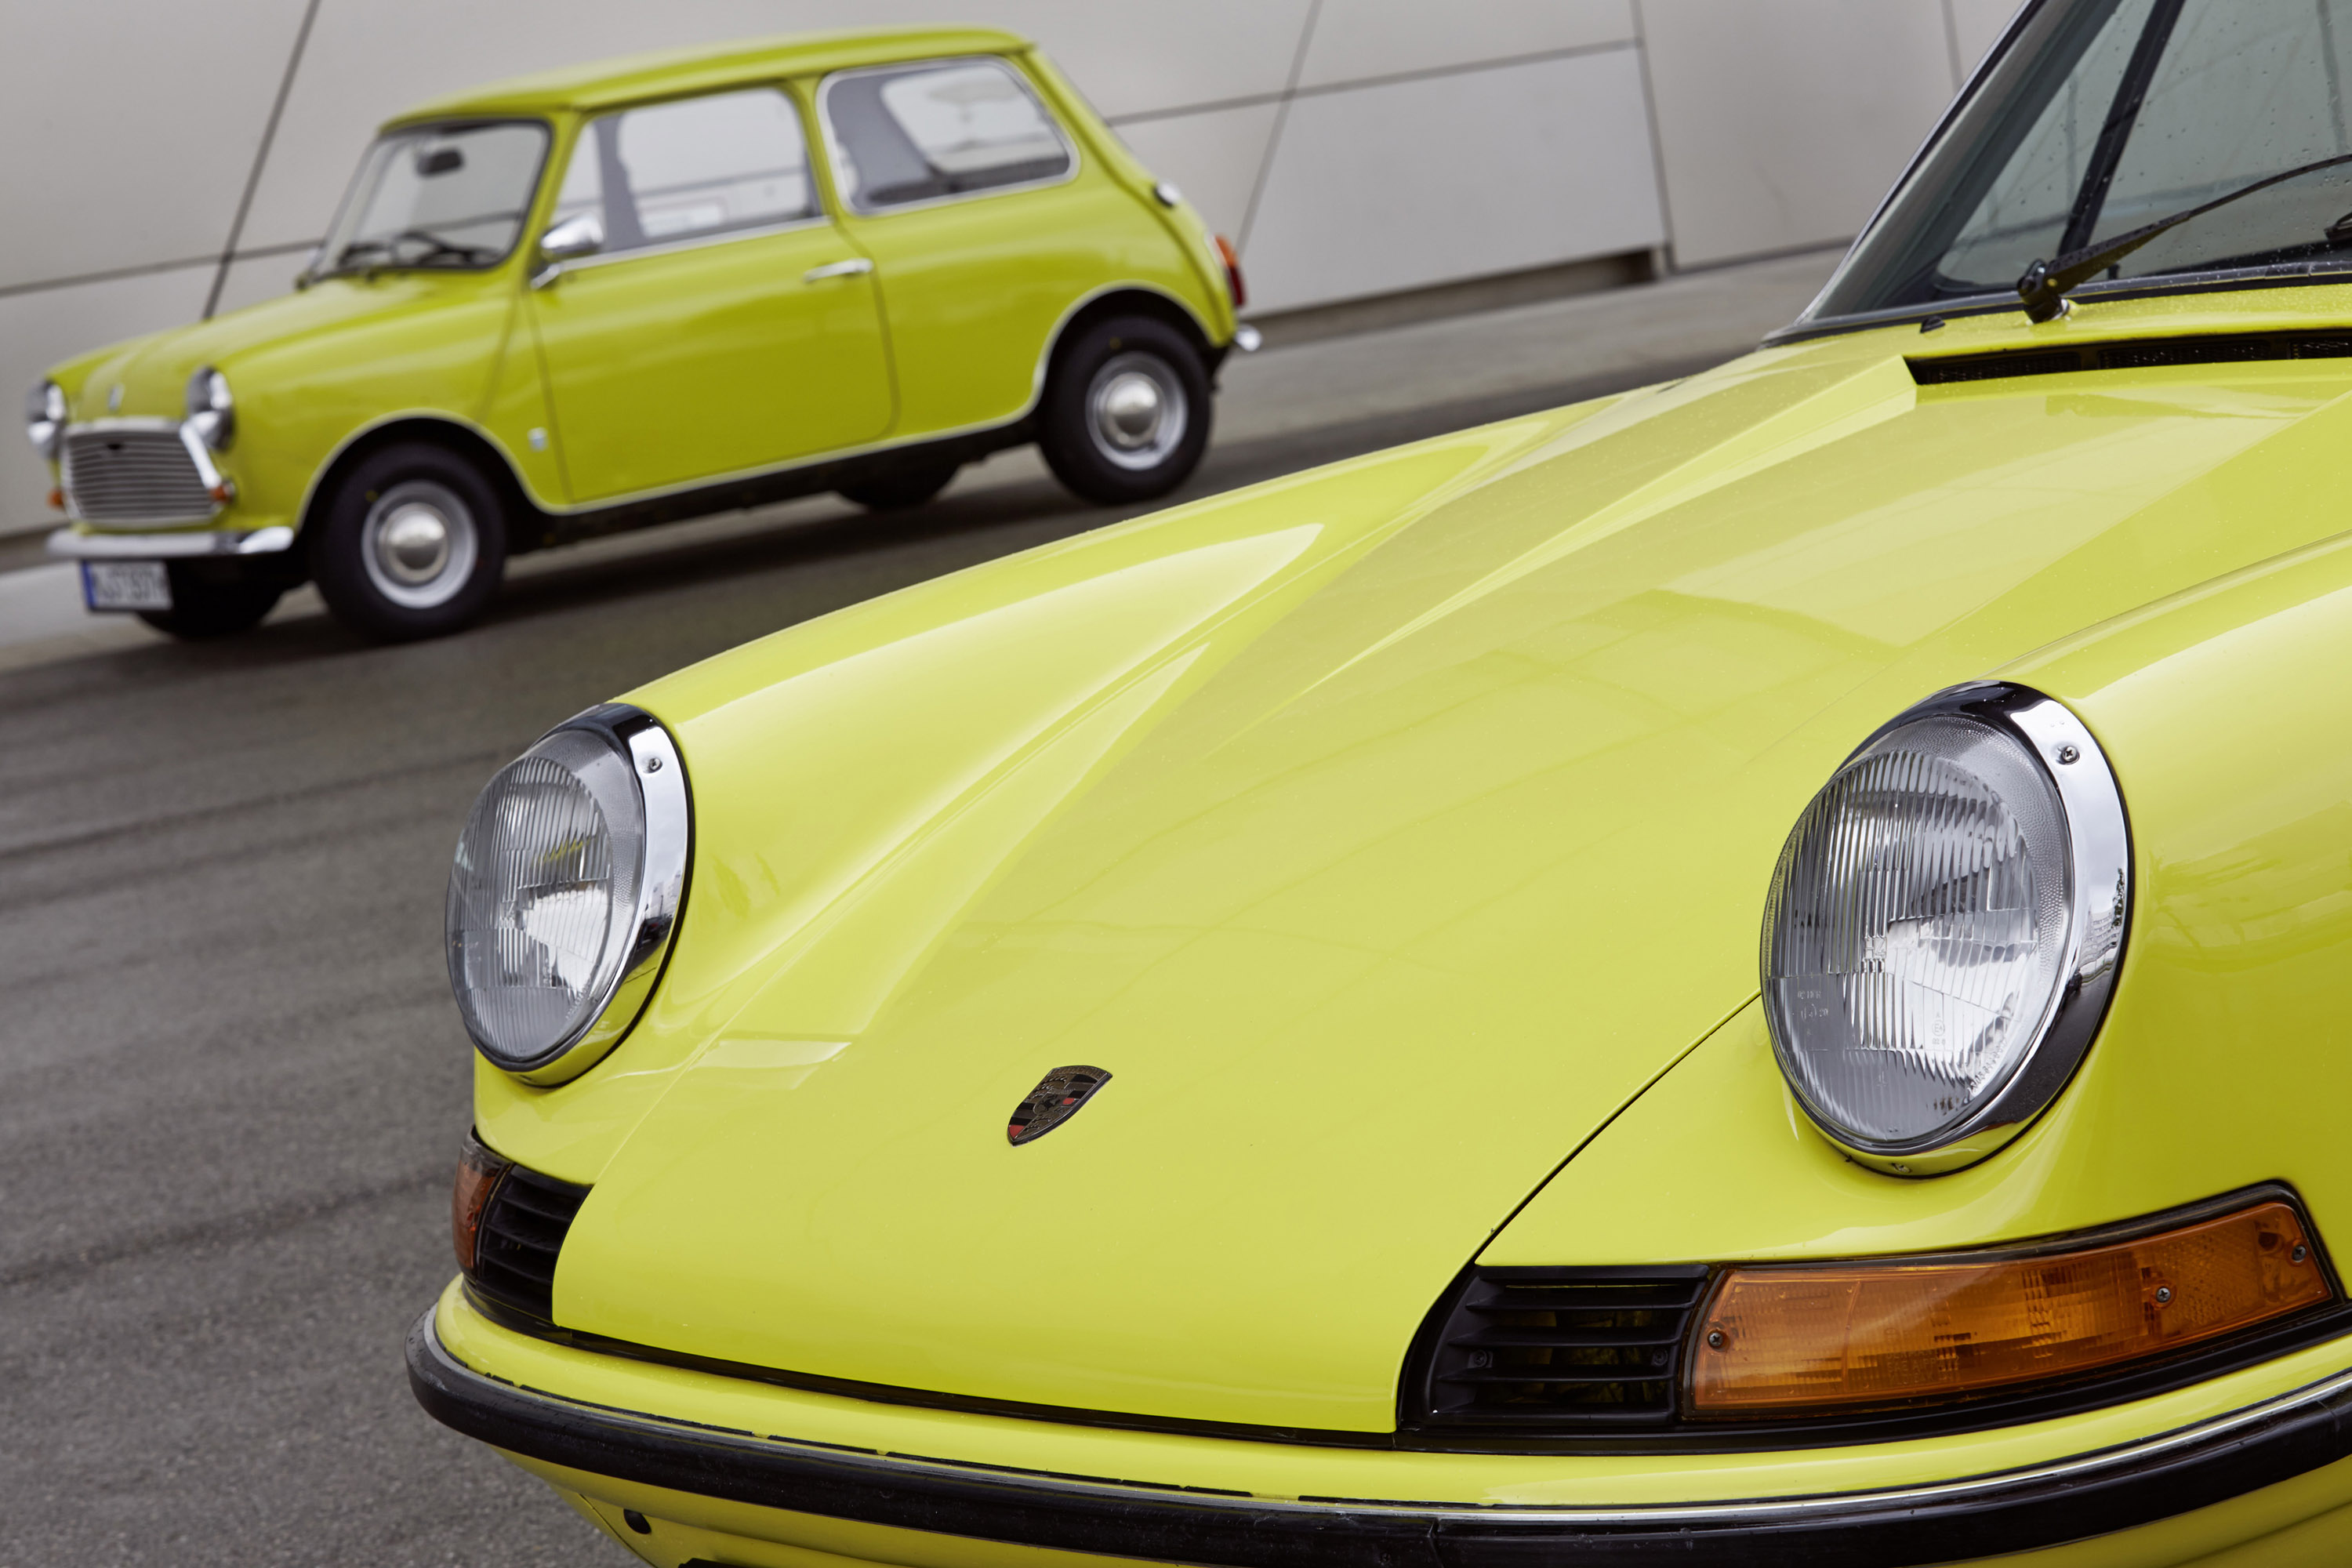 Classic MINI and Porsche 911